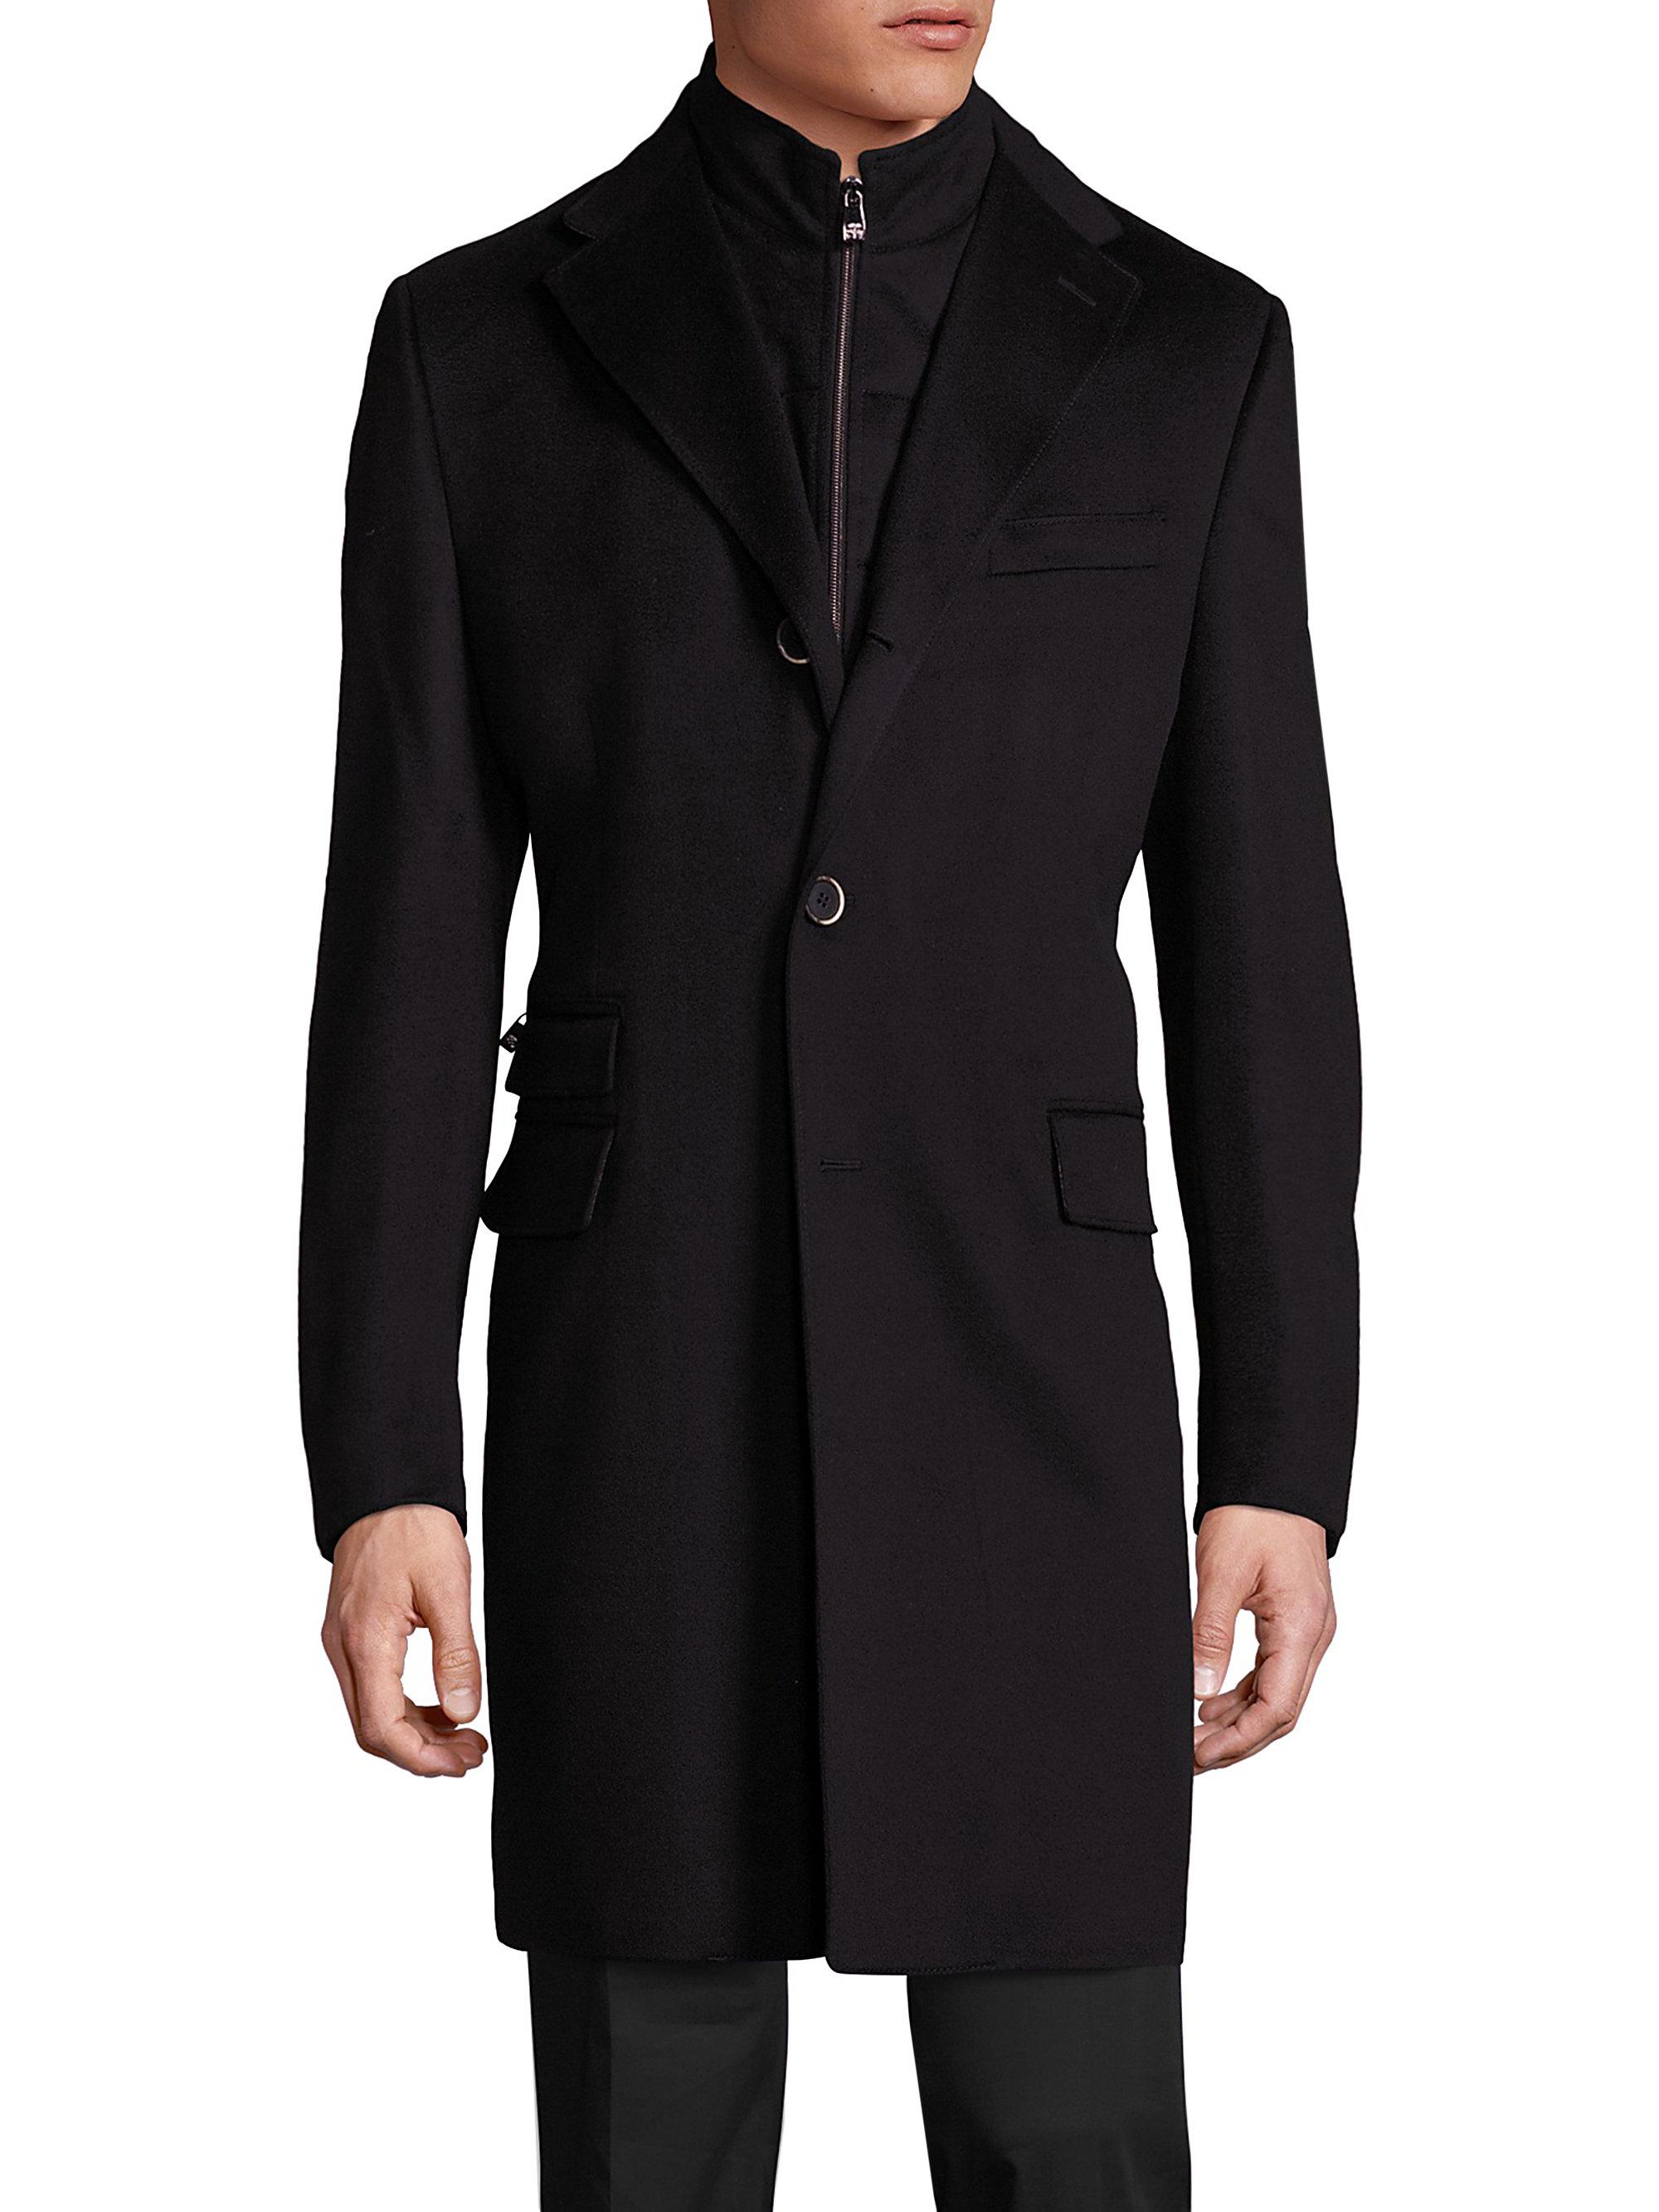 Corneliani Virgin Wool Long Coat in Black for Men - Lyst